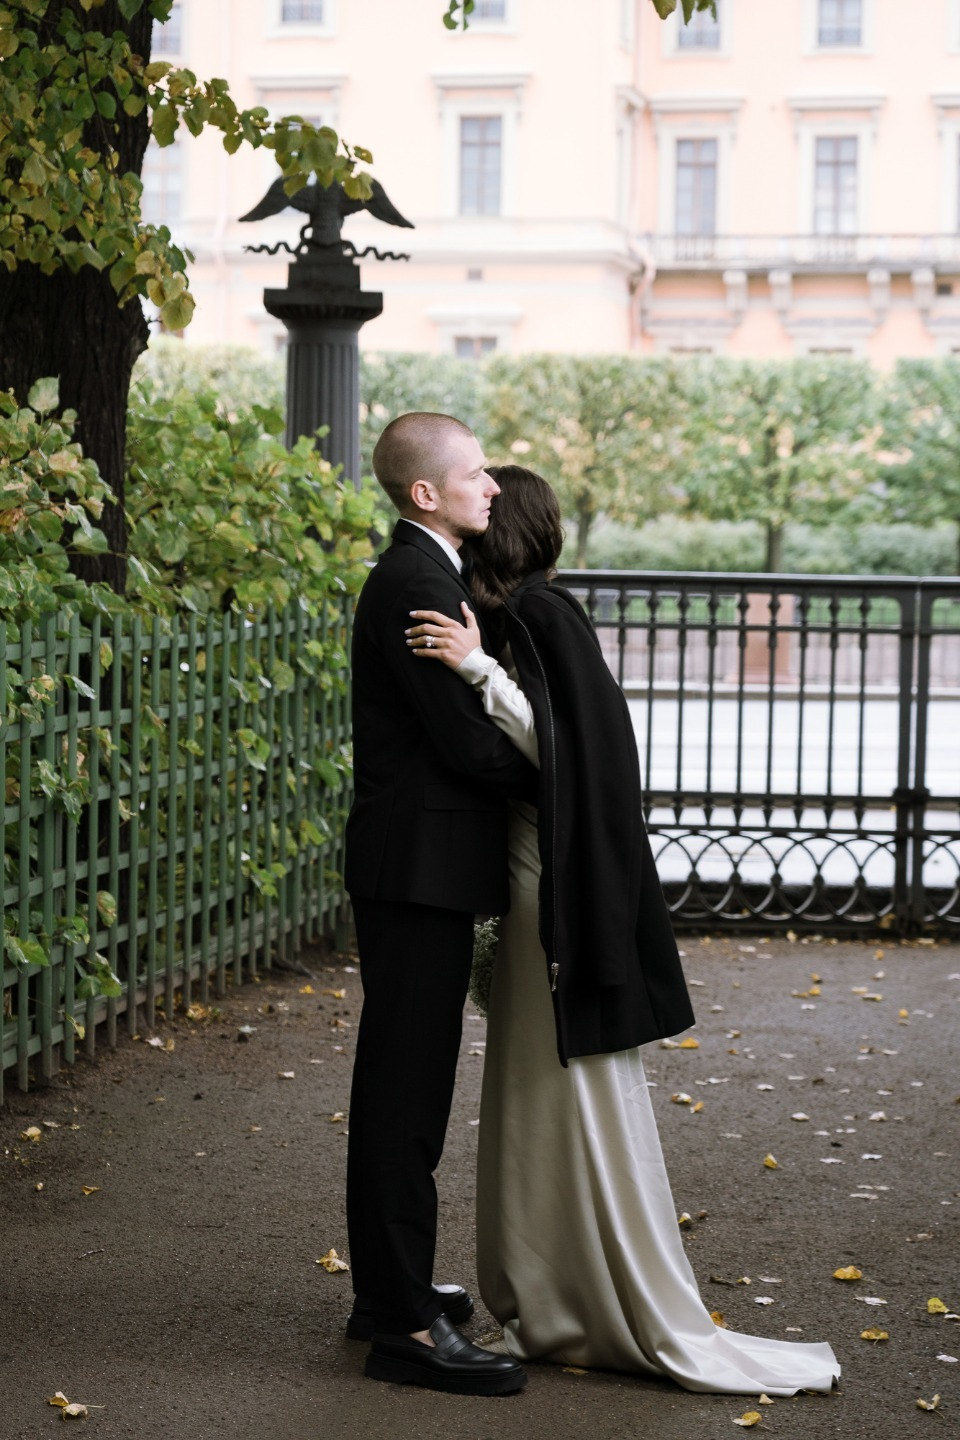 Любовь к Петербургу: лаконичная камерная свадьба